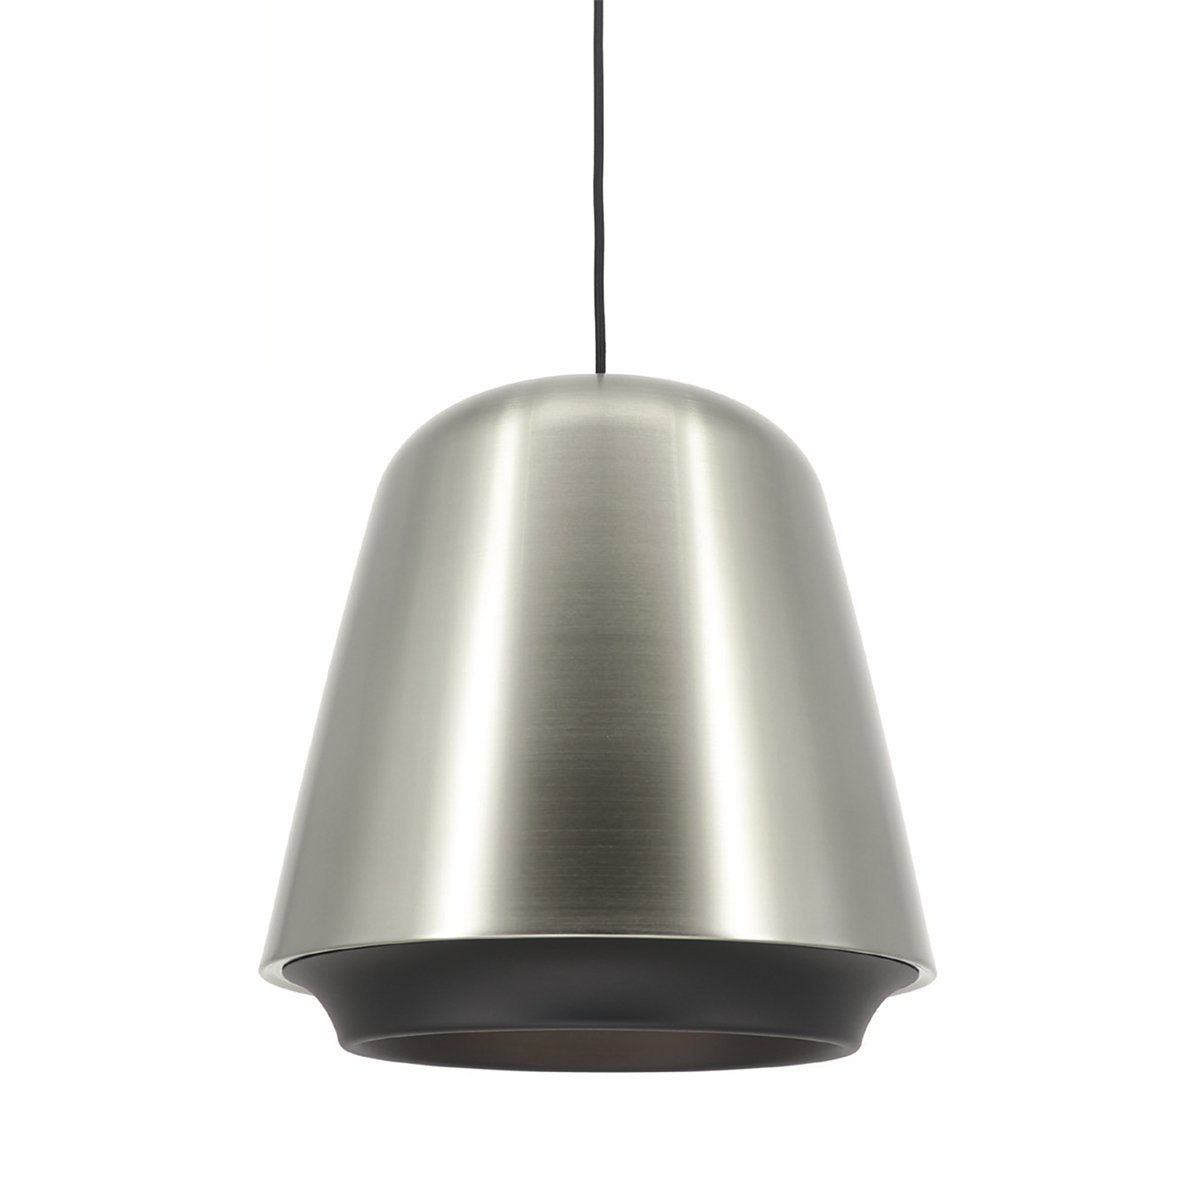 Hanglamp design ruw metaal Fiastra - Ø 35 cm